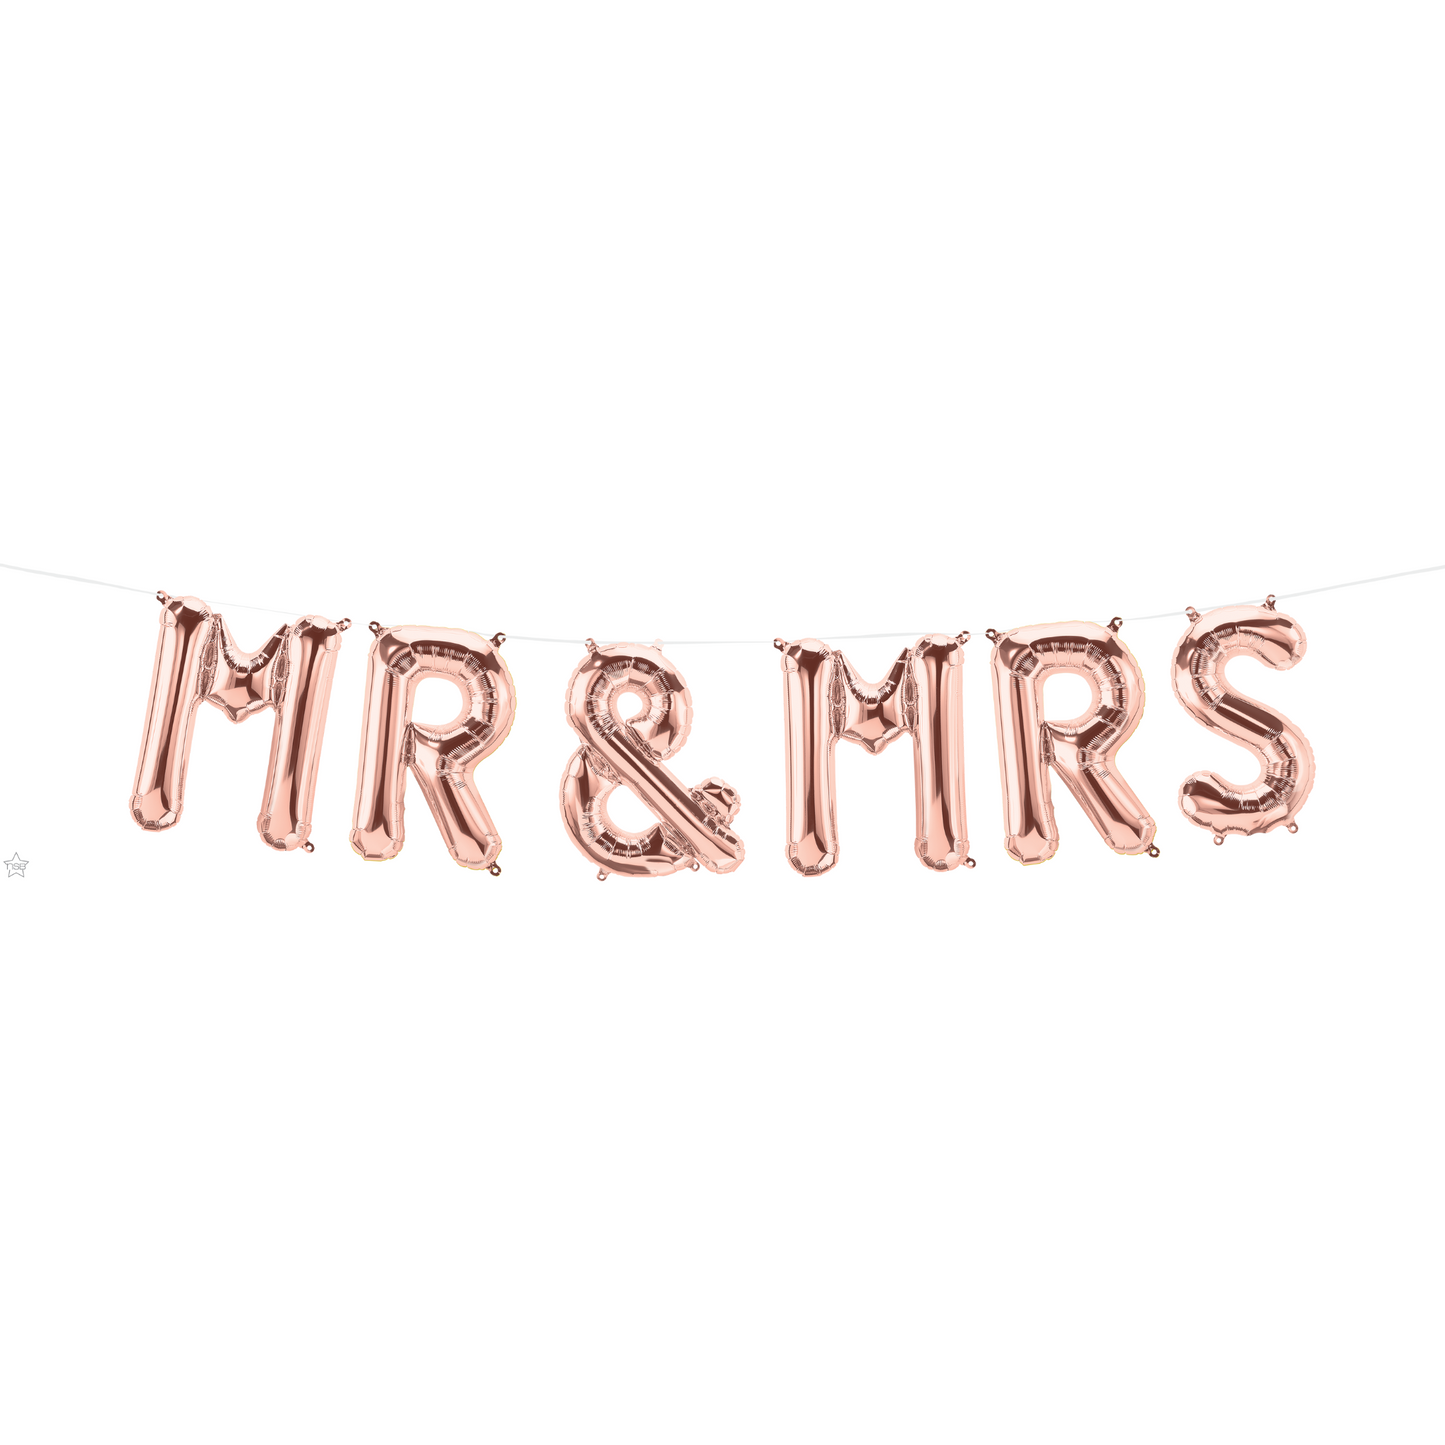 58820 - 16" MR(S) & MRS ROSE GOLD BALLOON KIT